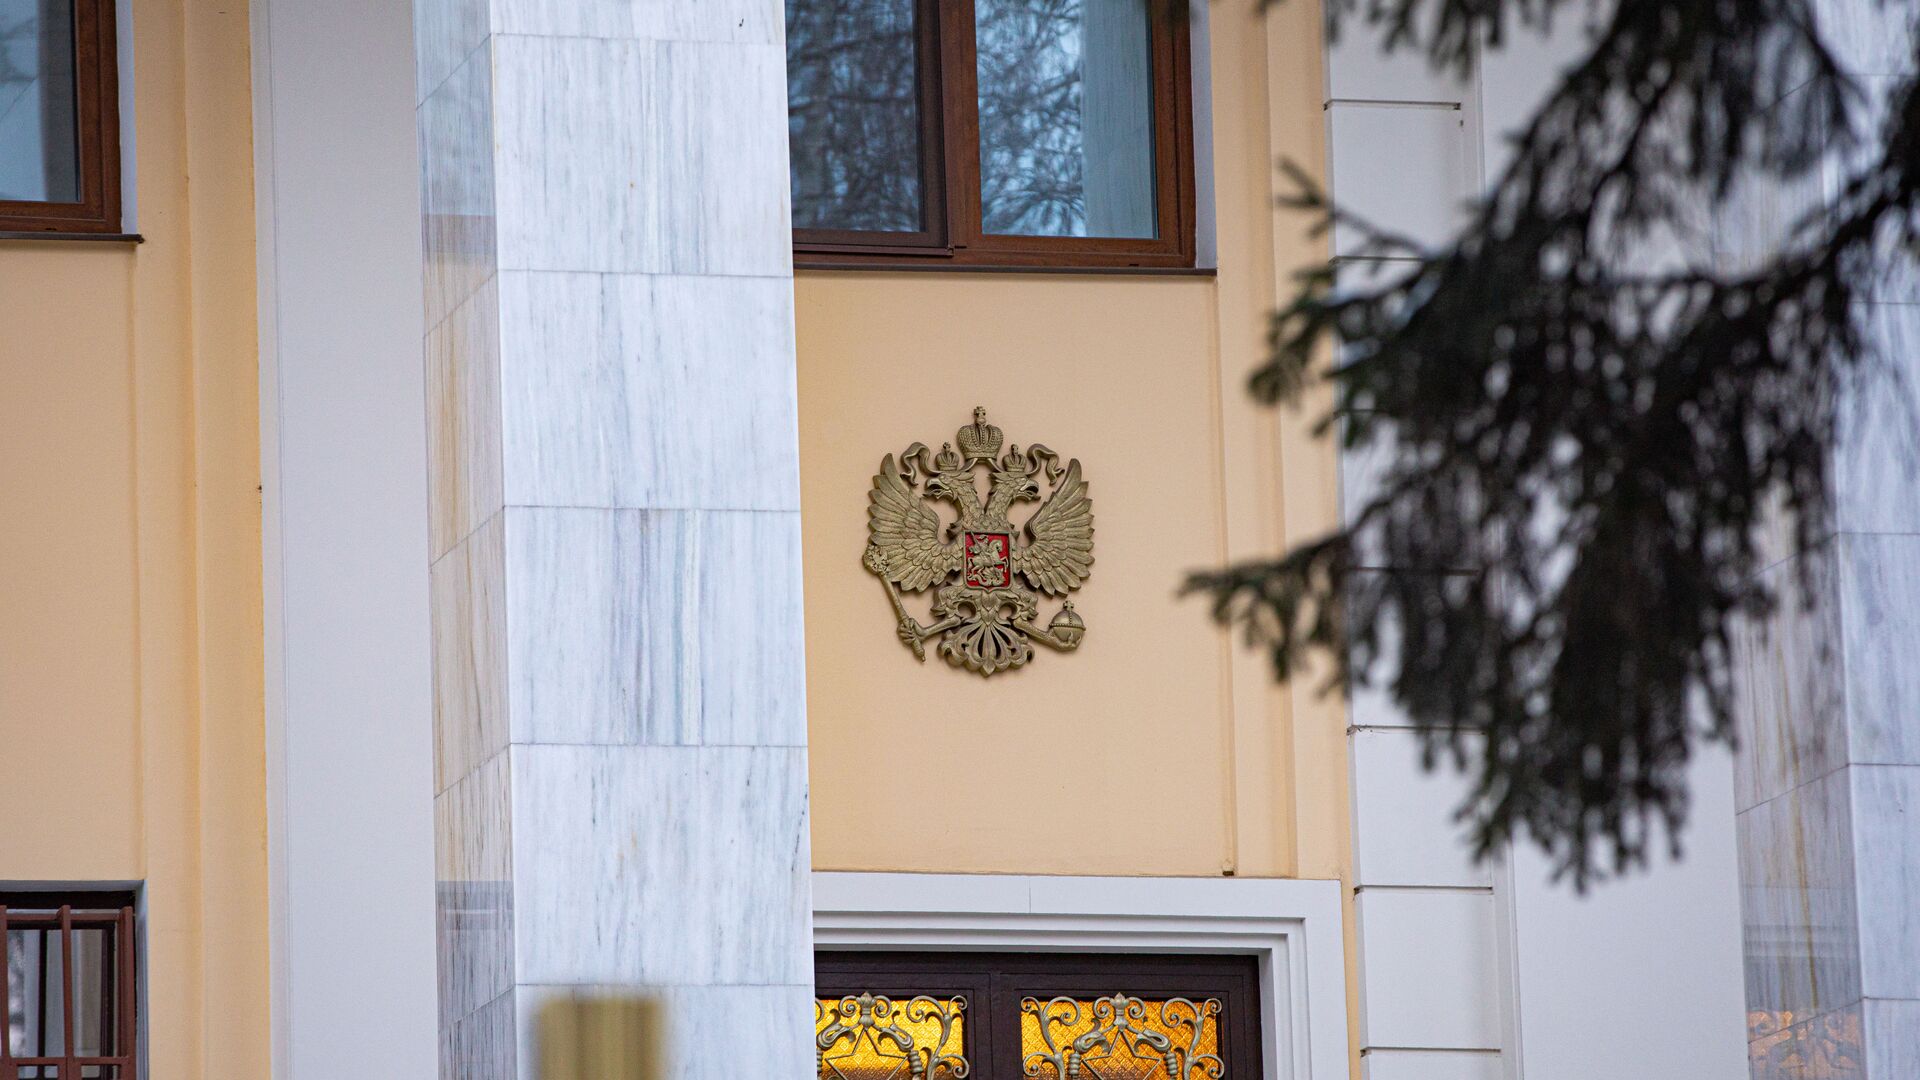 Ambasada federației ruse în București - Sputnik Moldova-România, 1920, 26.04.2021